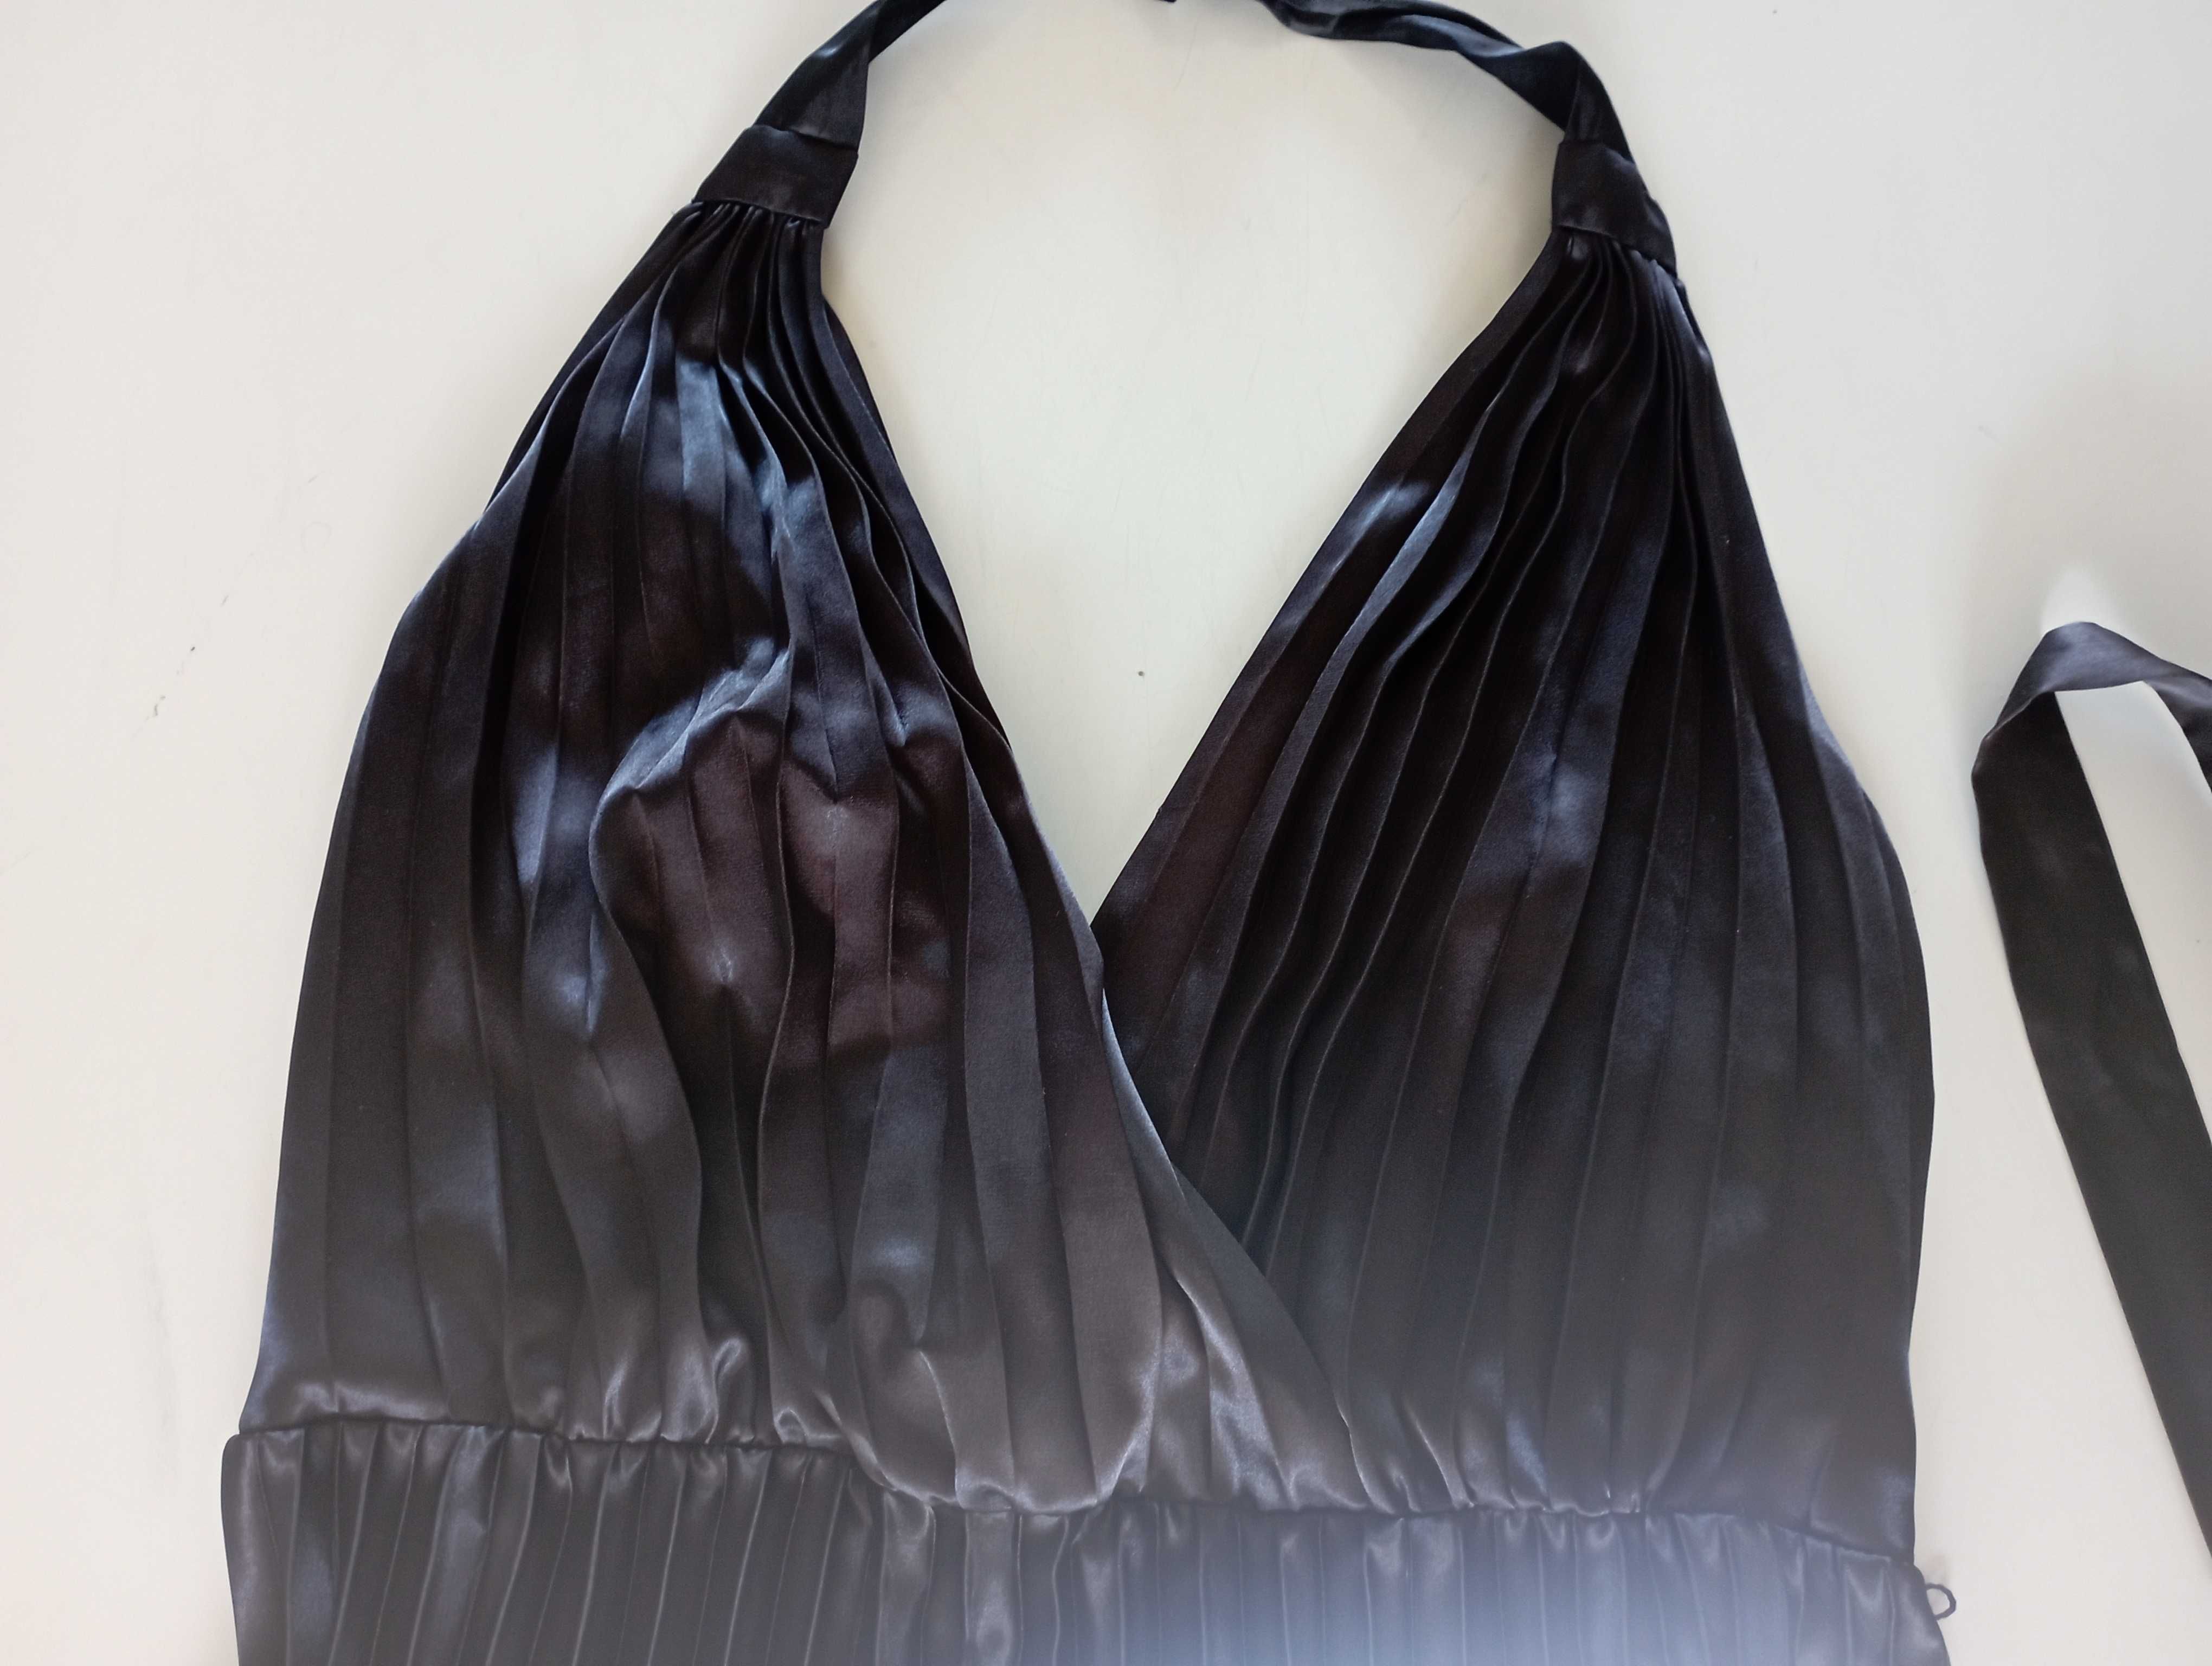 Wieczorowa suknia Ellos czarna plisowana rozmiar 48 xxl elegancka